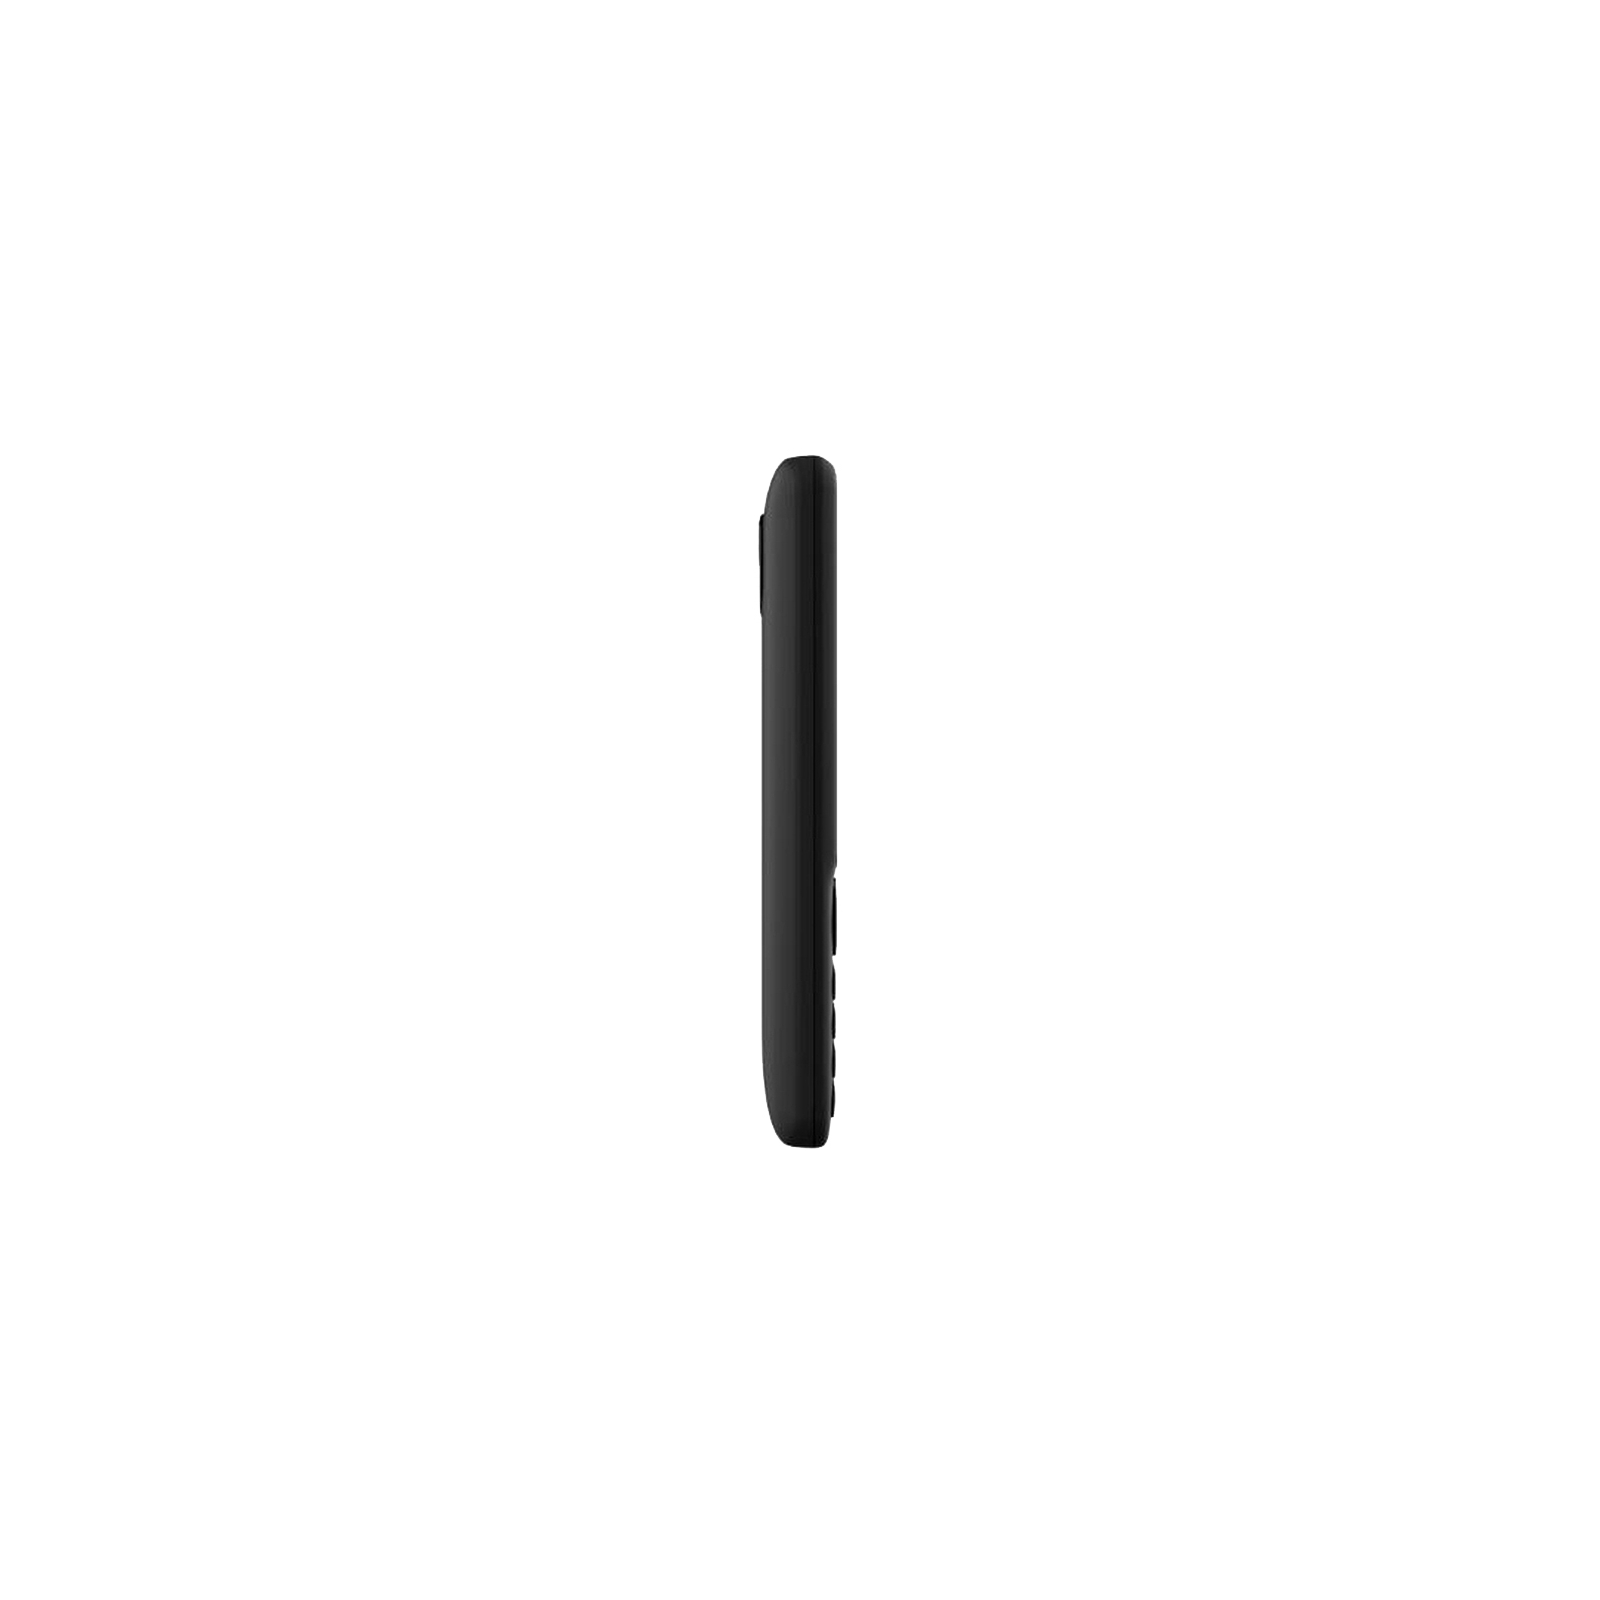 Мобильный телефон Nomi i2830 Black изображение 4